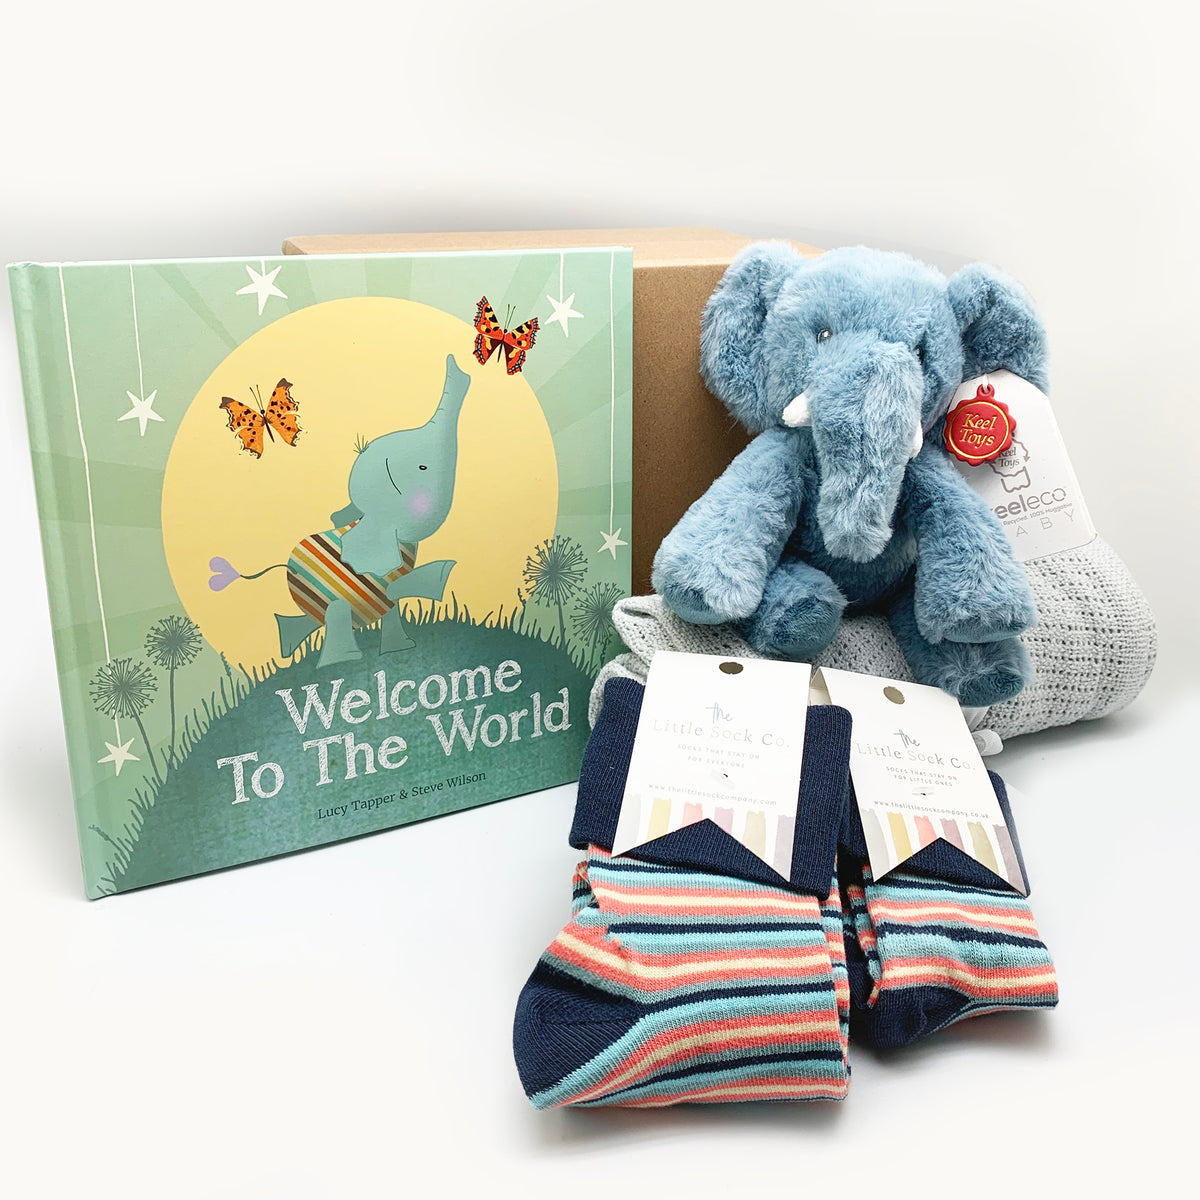 Mum & Baby Welcome to the World set - Newborn Baby Luxury Gift Set with Mini Me matching socks